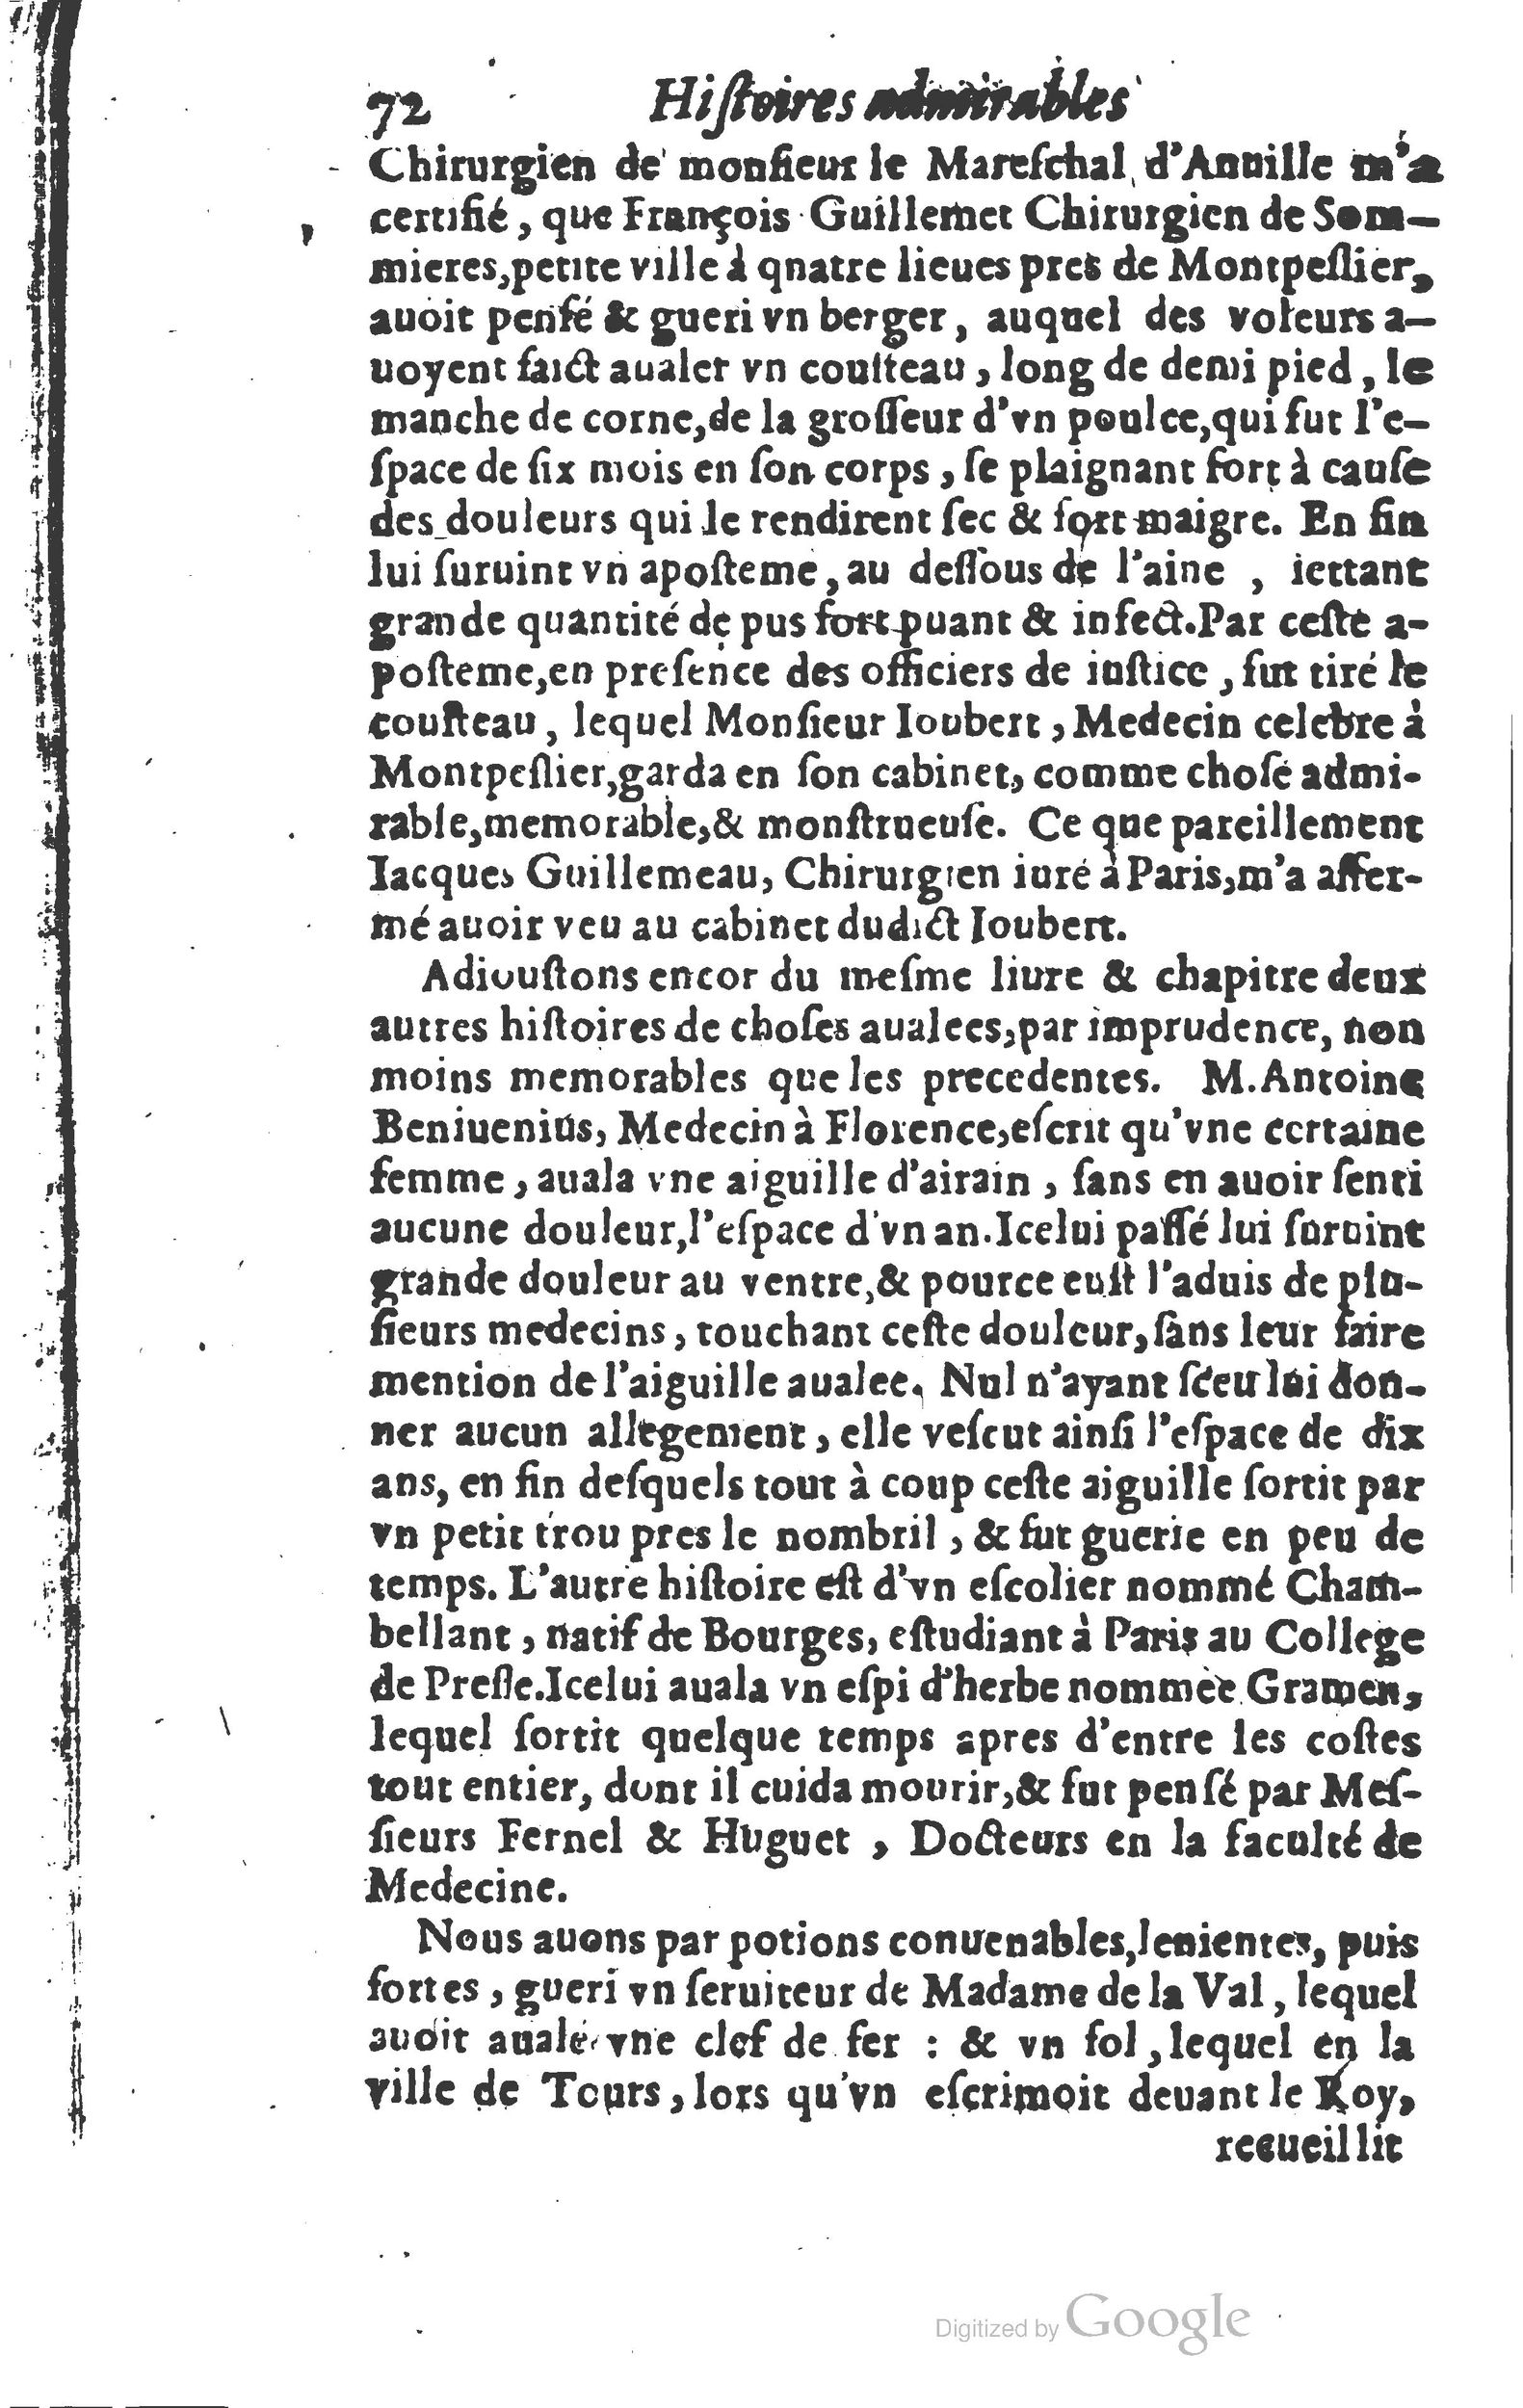 1610 Trésor d’histoires admirables et mémorables de nostre temps Marceau Princeton_Page_0093.jpg